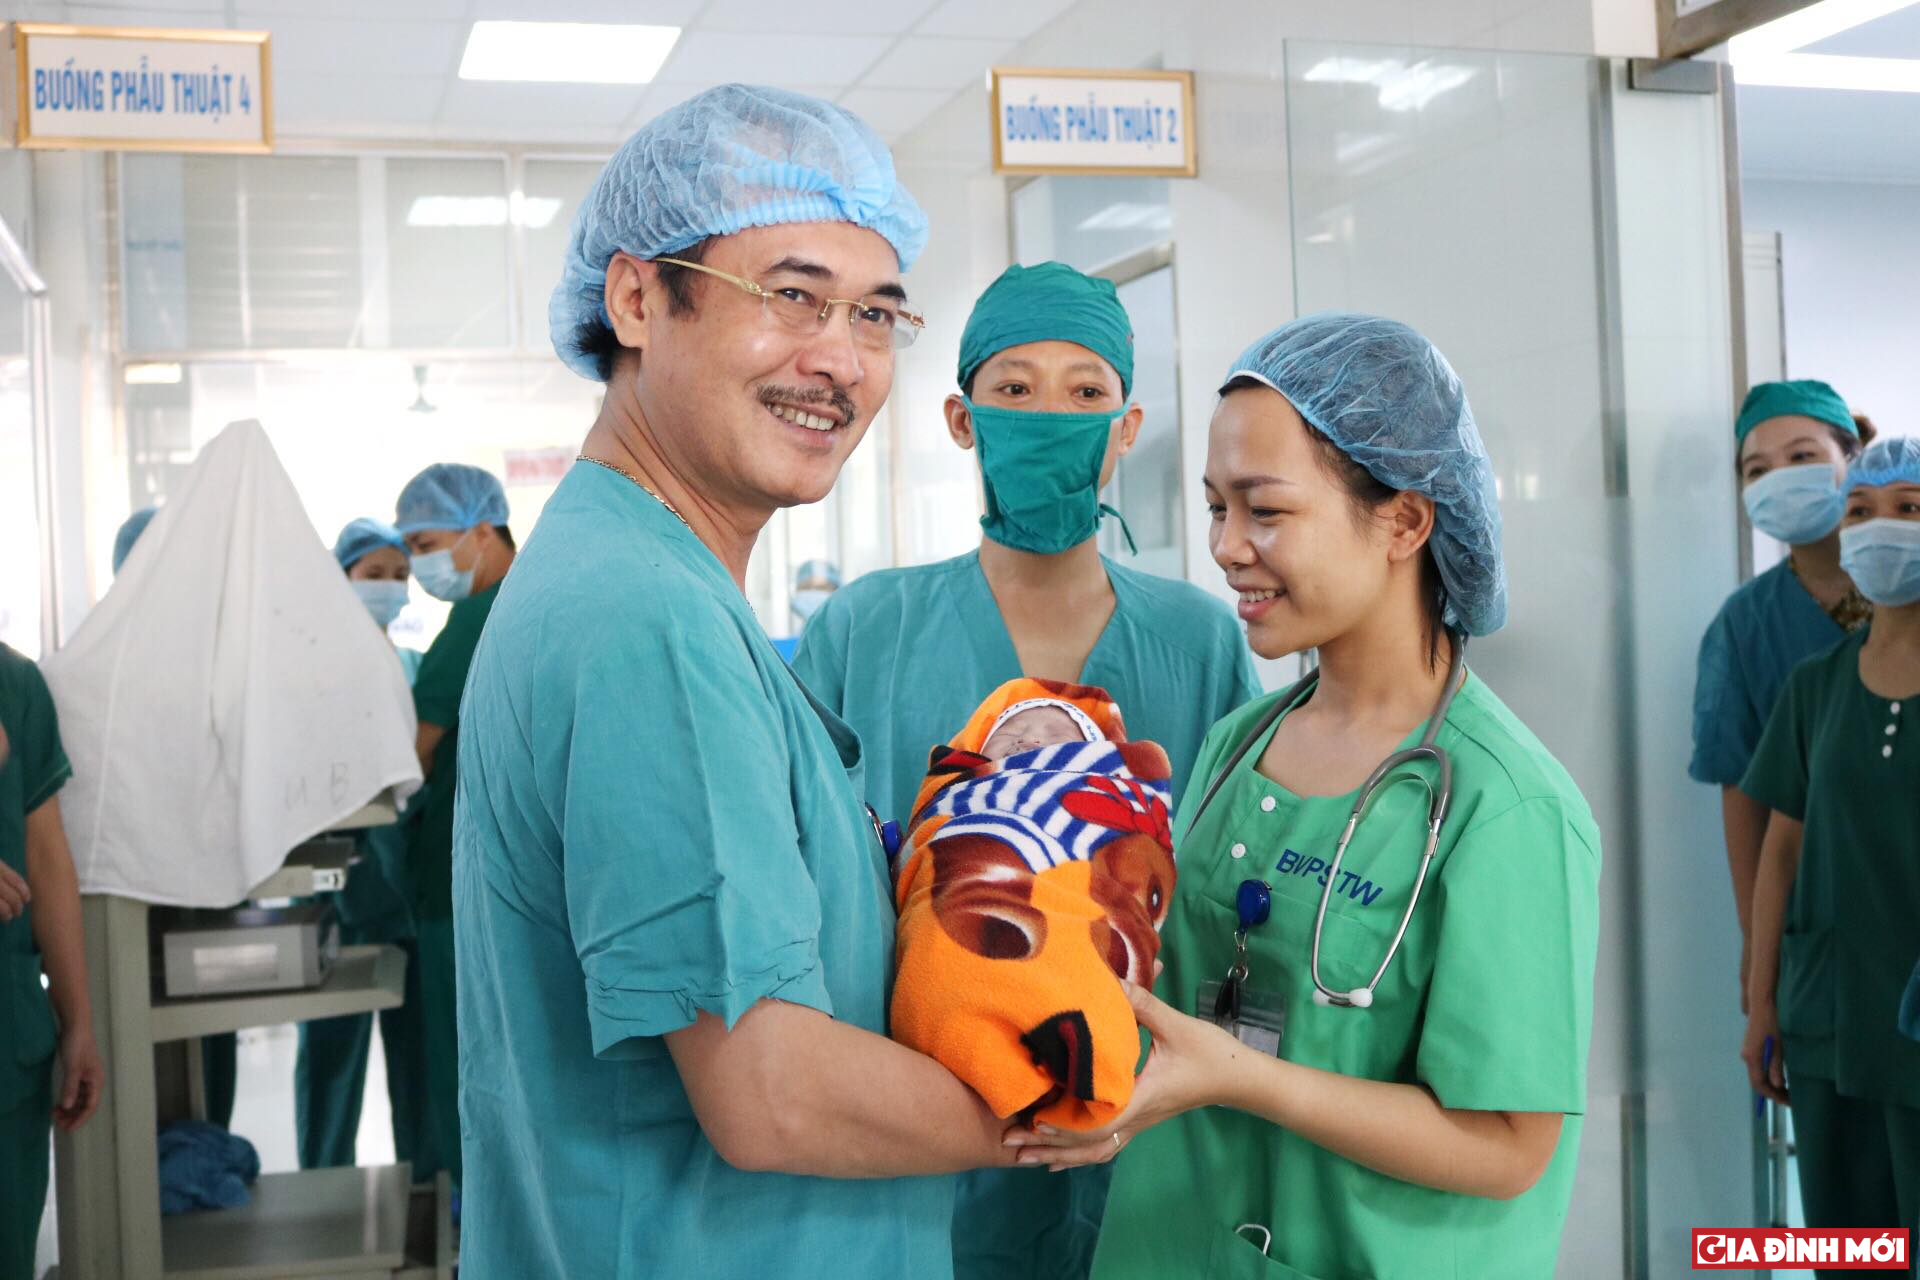 PGS. TS Vũ Xuân Phú - Phó Giám đốc Bệnh viện Phổi Trung ương đại diện Bệnh viện Phổi trao bé gái sơ sinh cho đại diện Bệnh viện Phụ sản Trung Ương